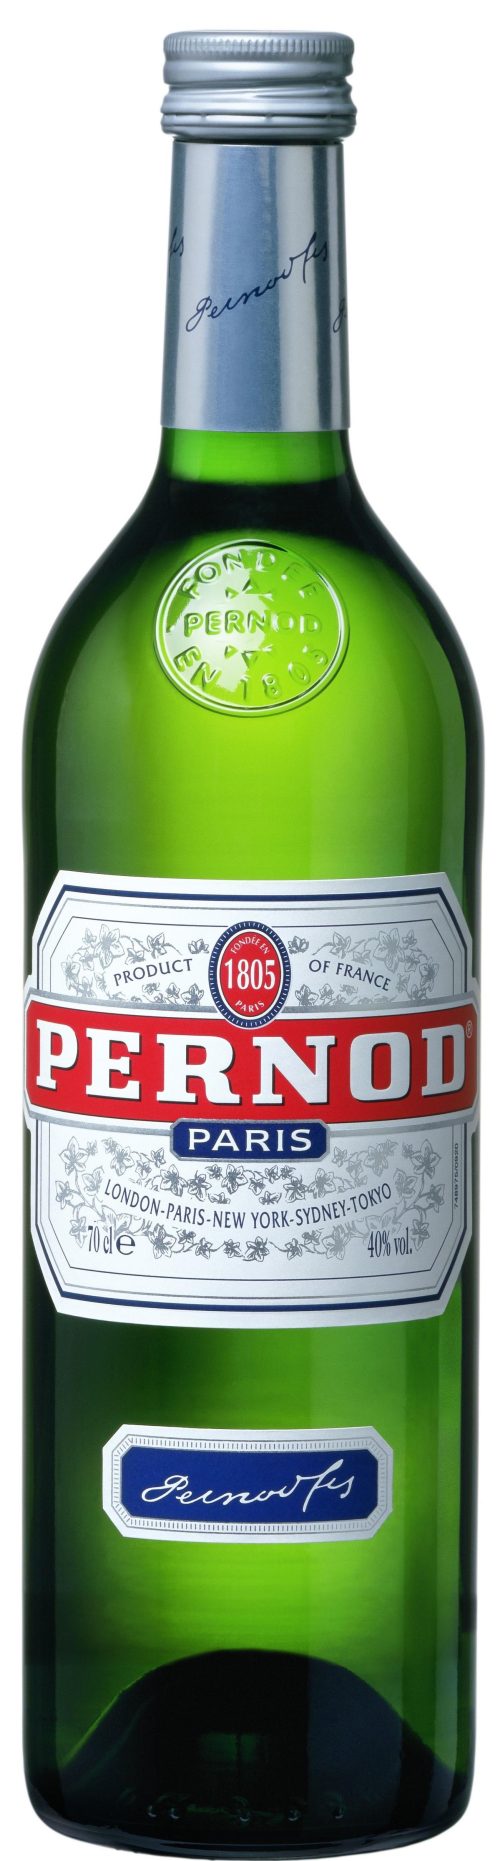 NV-Pernod Pastis